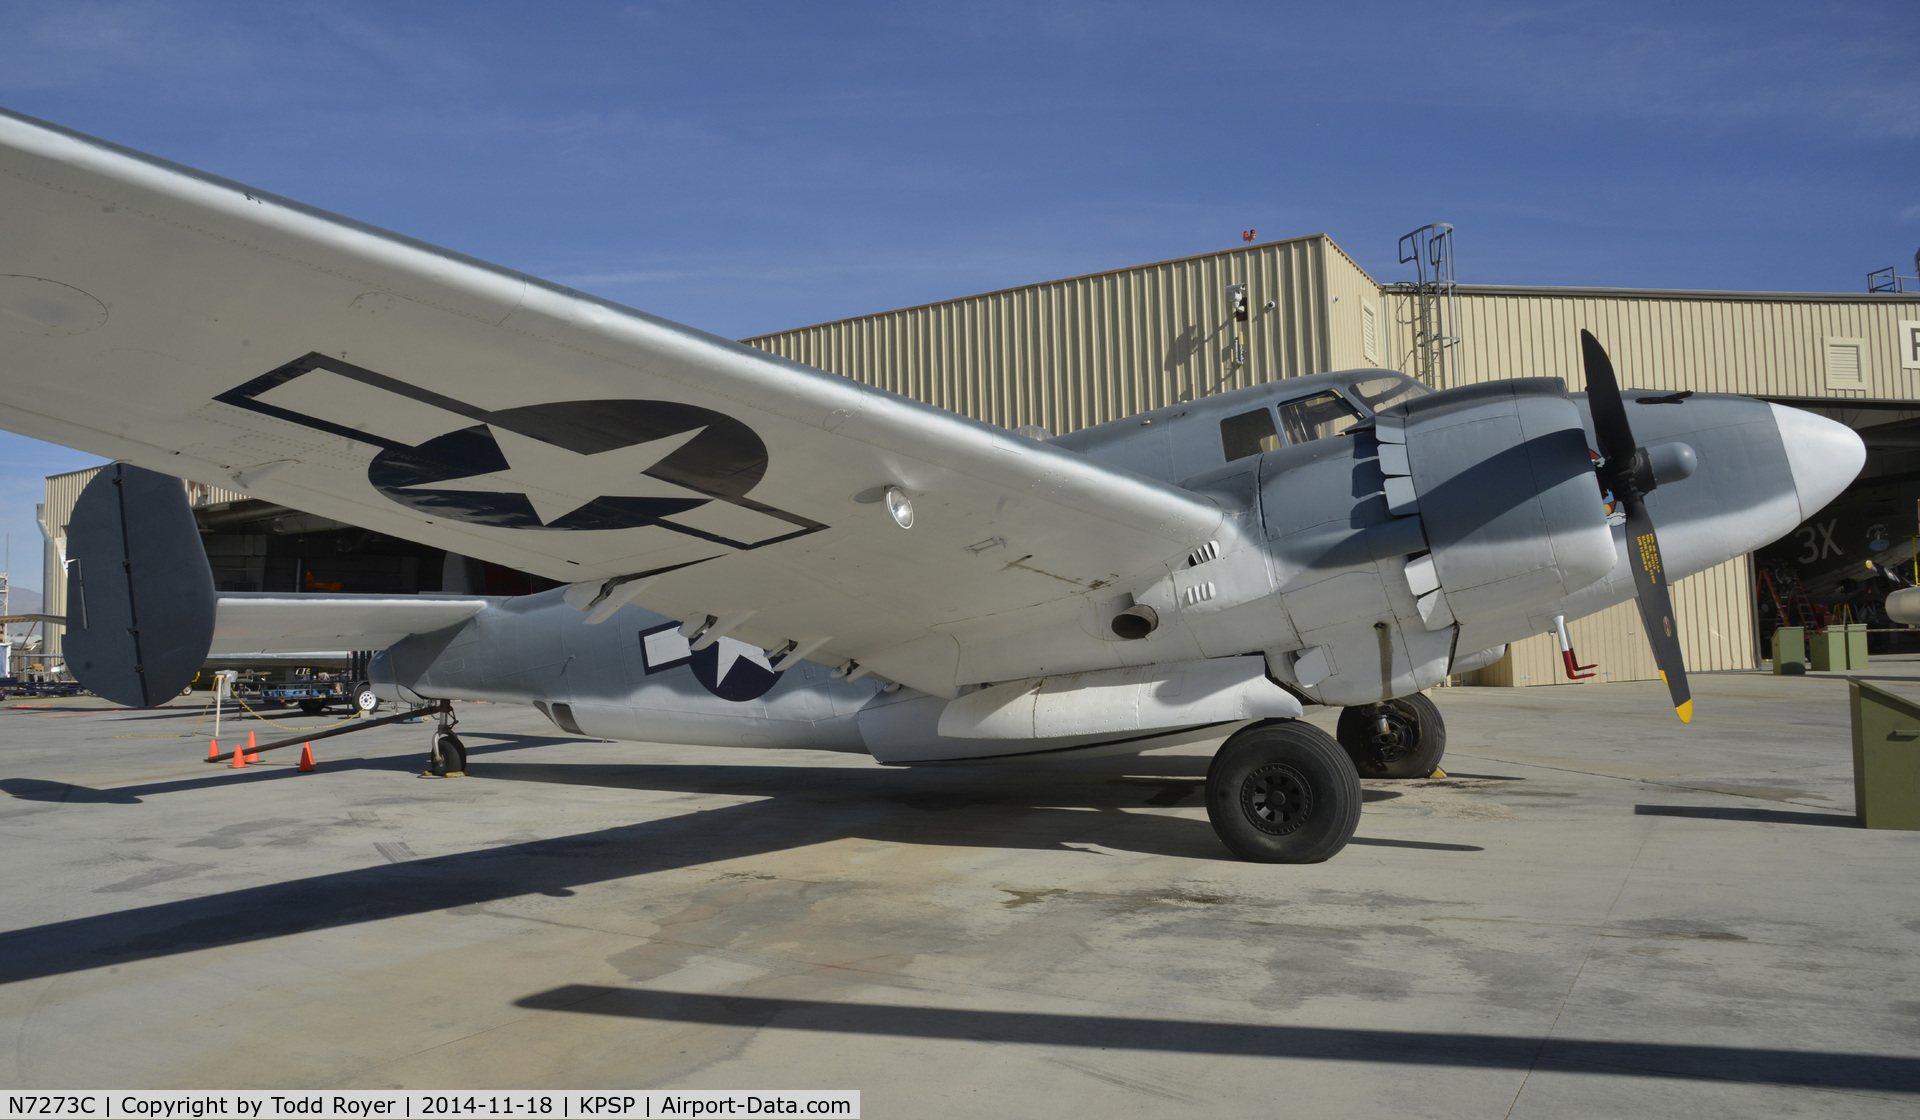 N7273C, 1940 Lockheed PV-2 Harpoon C/N 15-1177, On display at the Palm Springs Air Museum